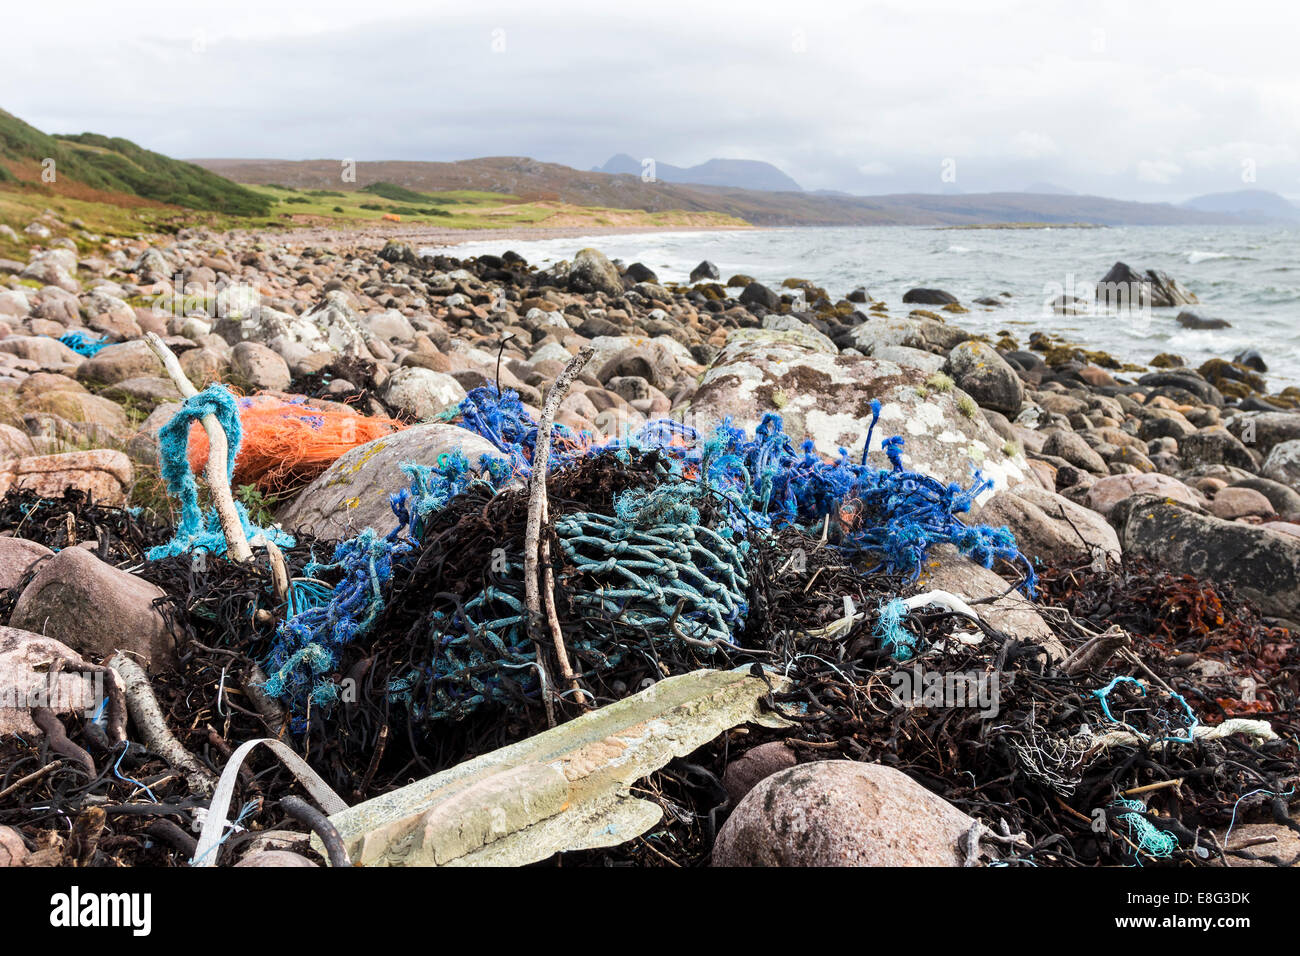 Les détritus en plastique tels que les filets de pêche et des cordages sur la plage du sud de Red Point, côte ouest de l'Ecosse Banque D'Images